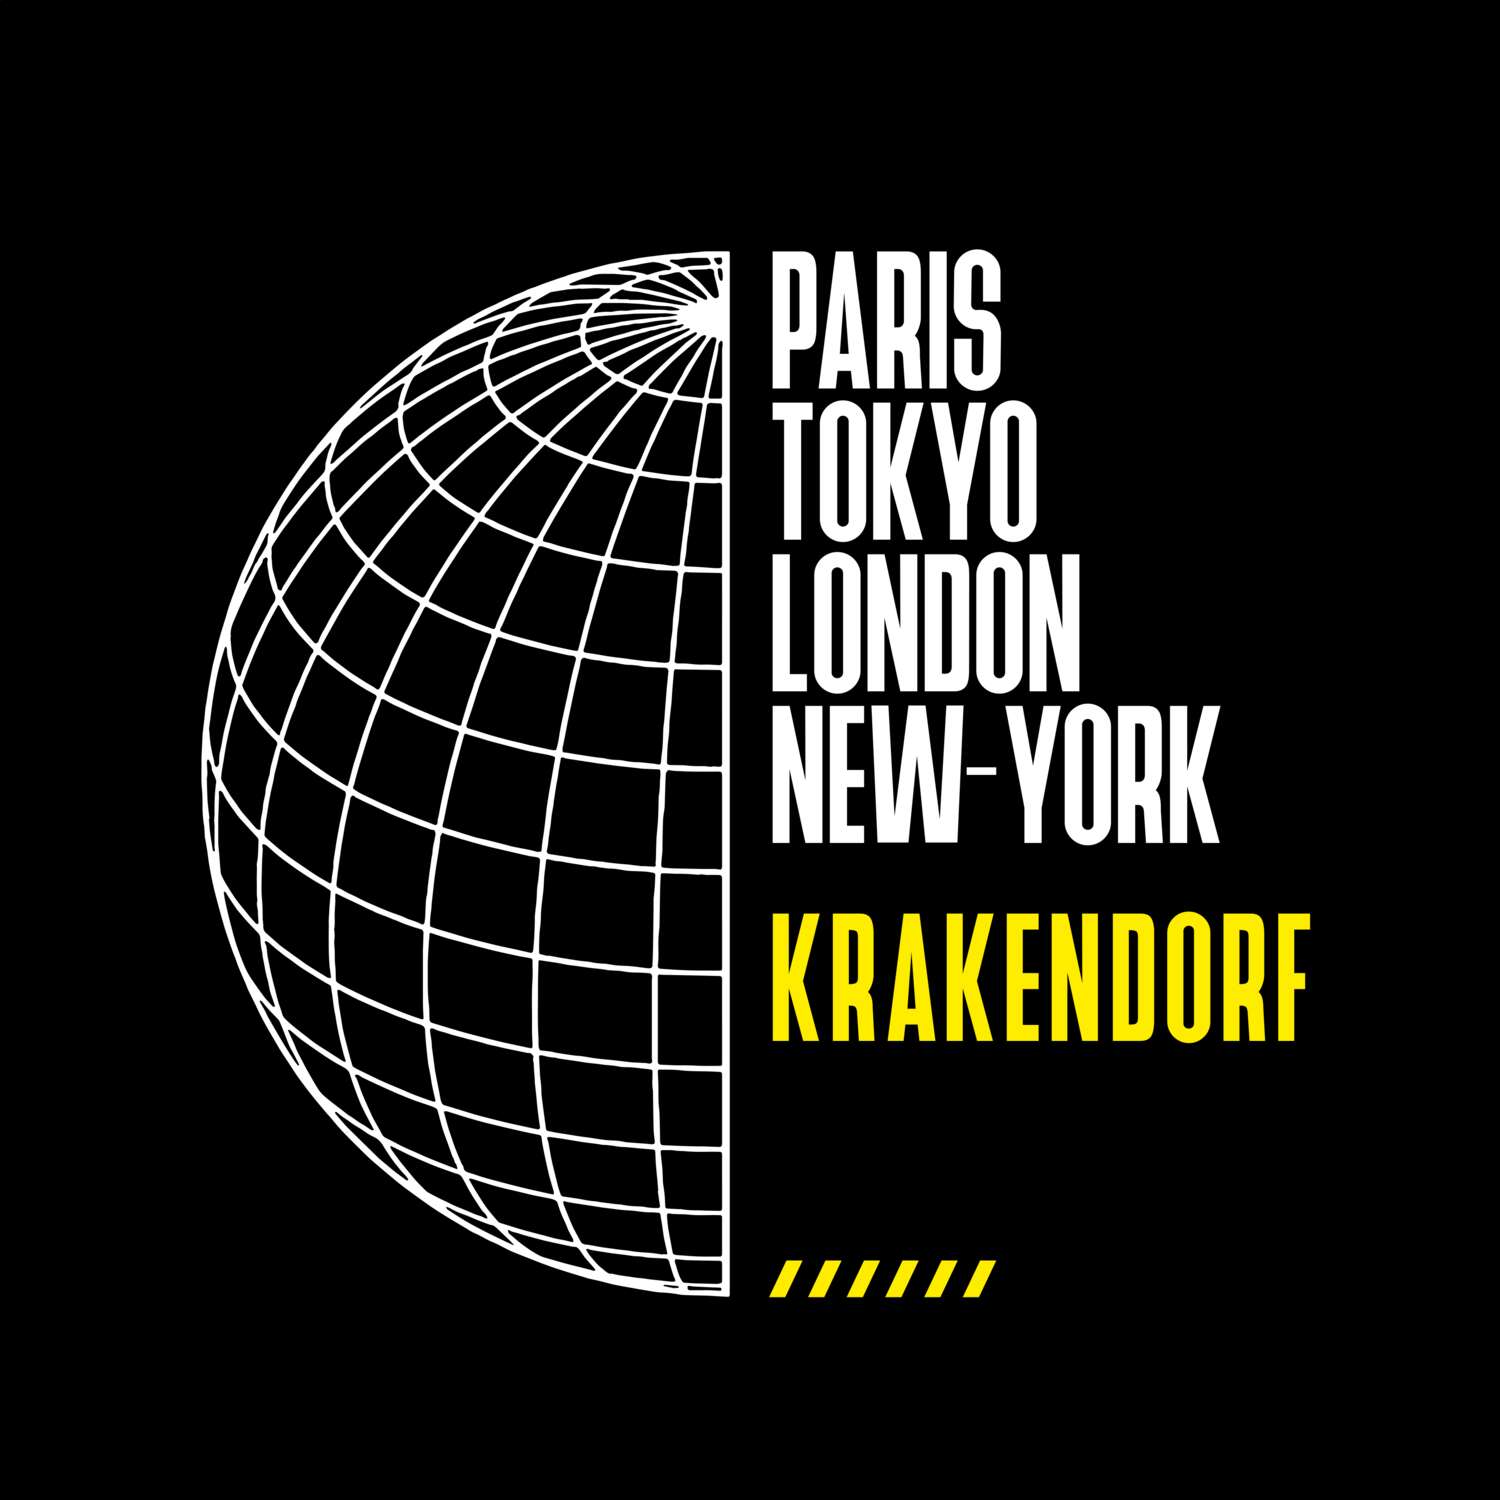 Krakendorf T-Shirt »Paris Tokyo London«